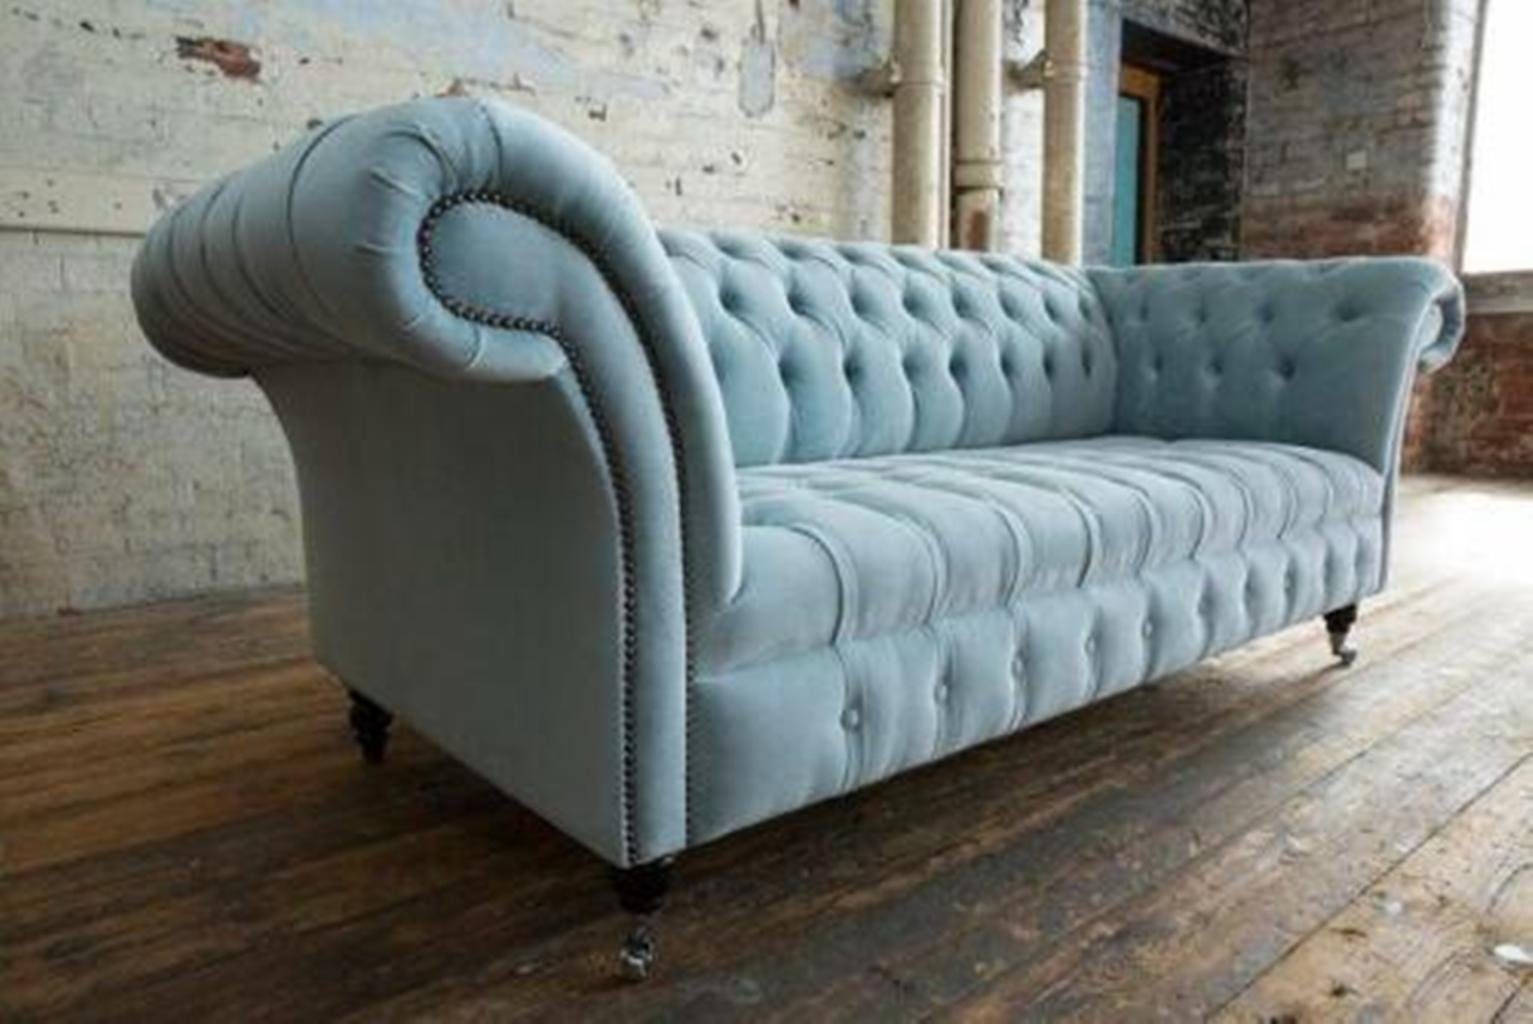 JVmoebel Chesterfield-Sofa Blauer luxus 3-Sitzer Chesterfield Couch luxus Sofa Modern Neu, Made in Europe | Chesterfield-Sofas